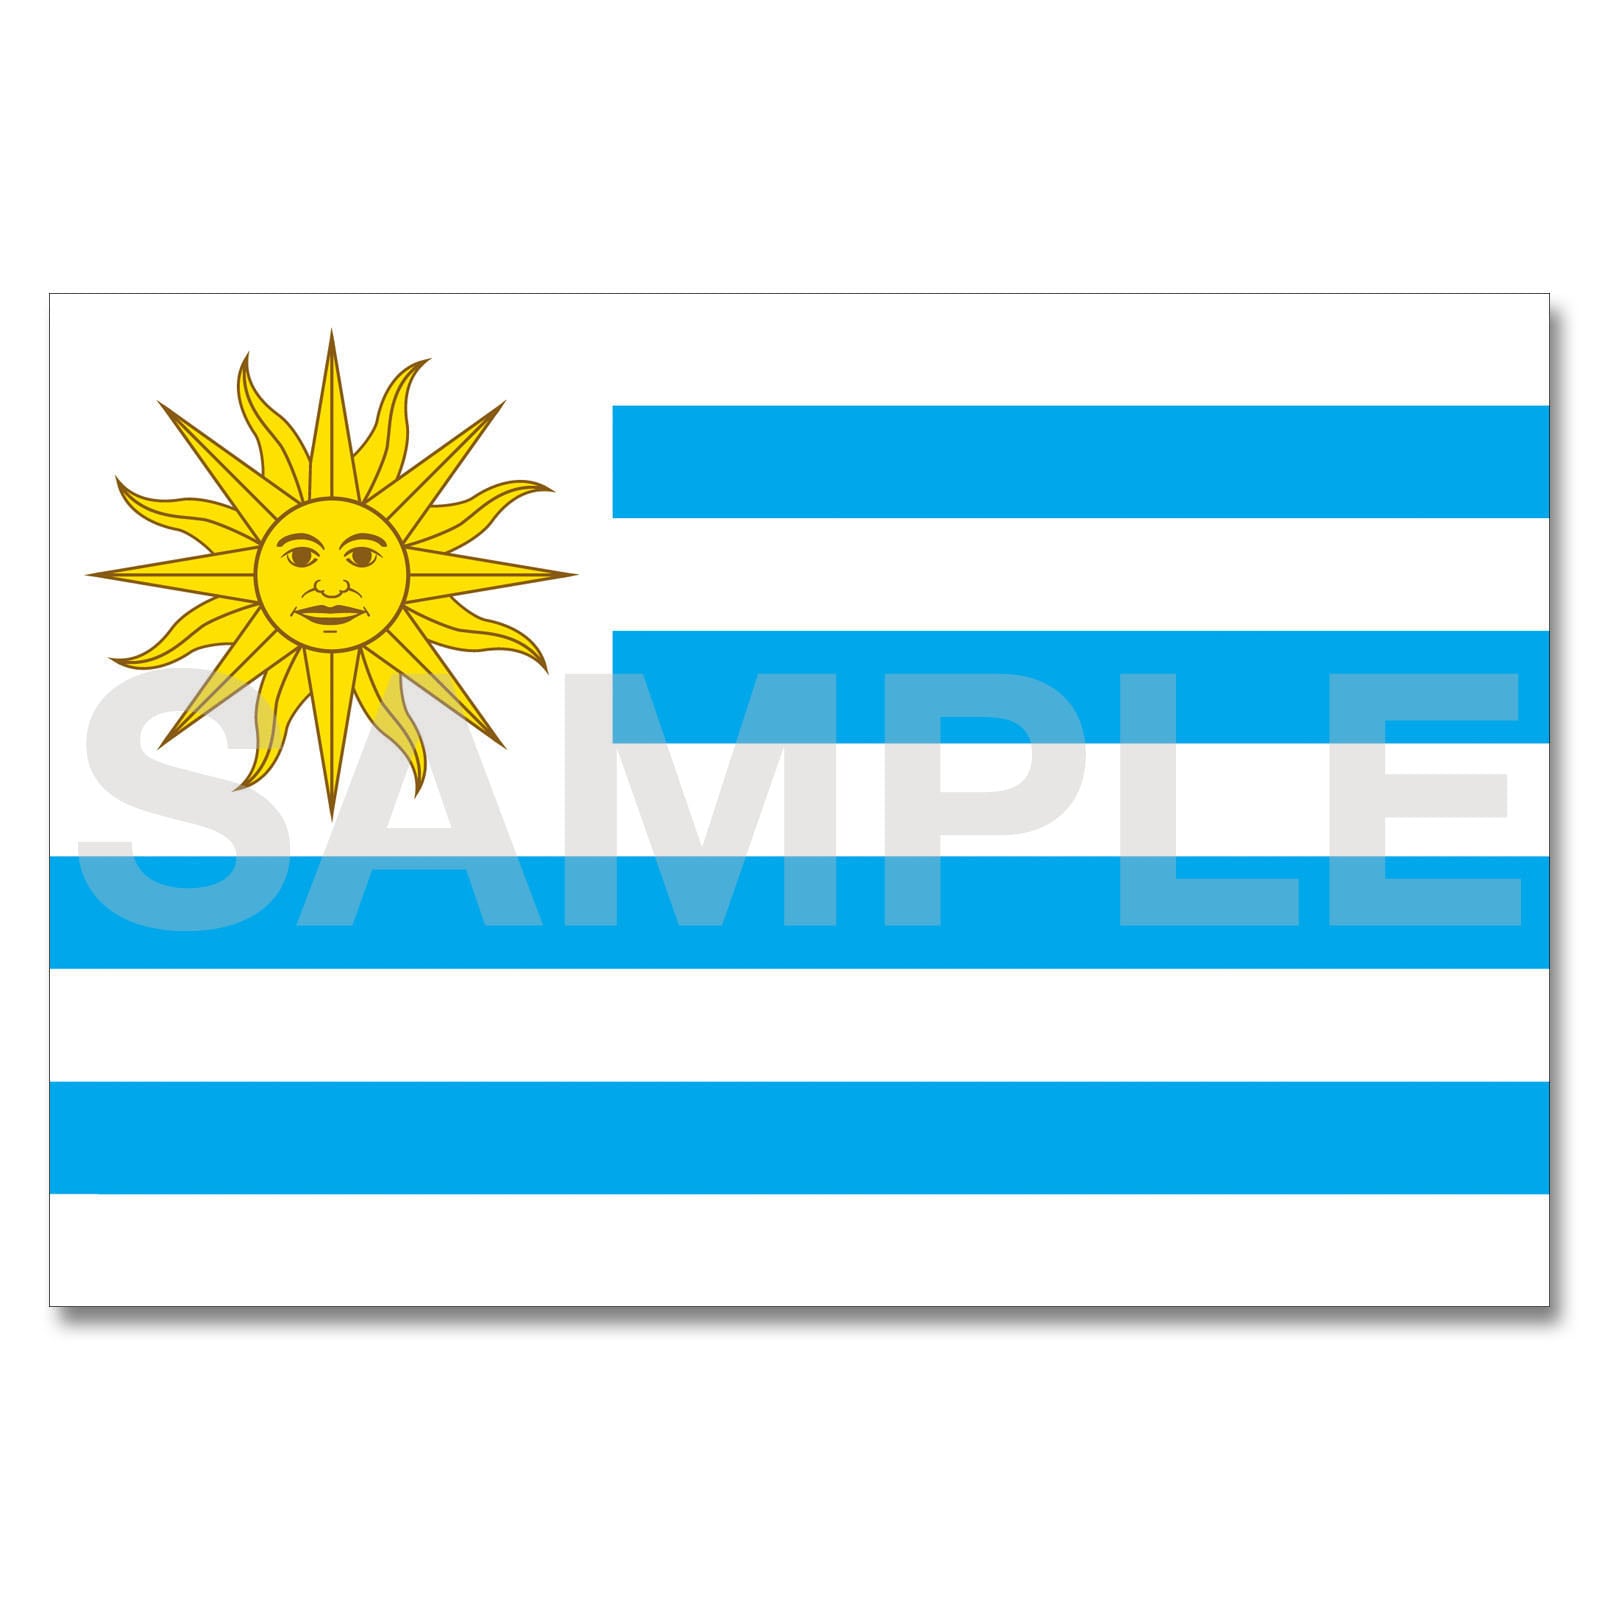 [まとめ得] 世界の国旗 万国旗 ブラジル 120×180cm x 2個セット - 2